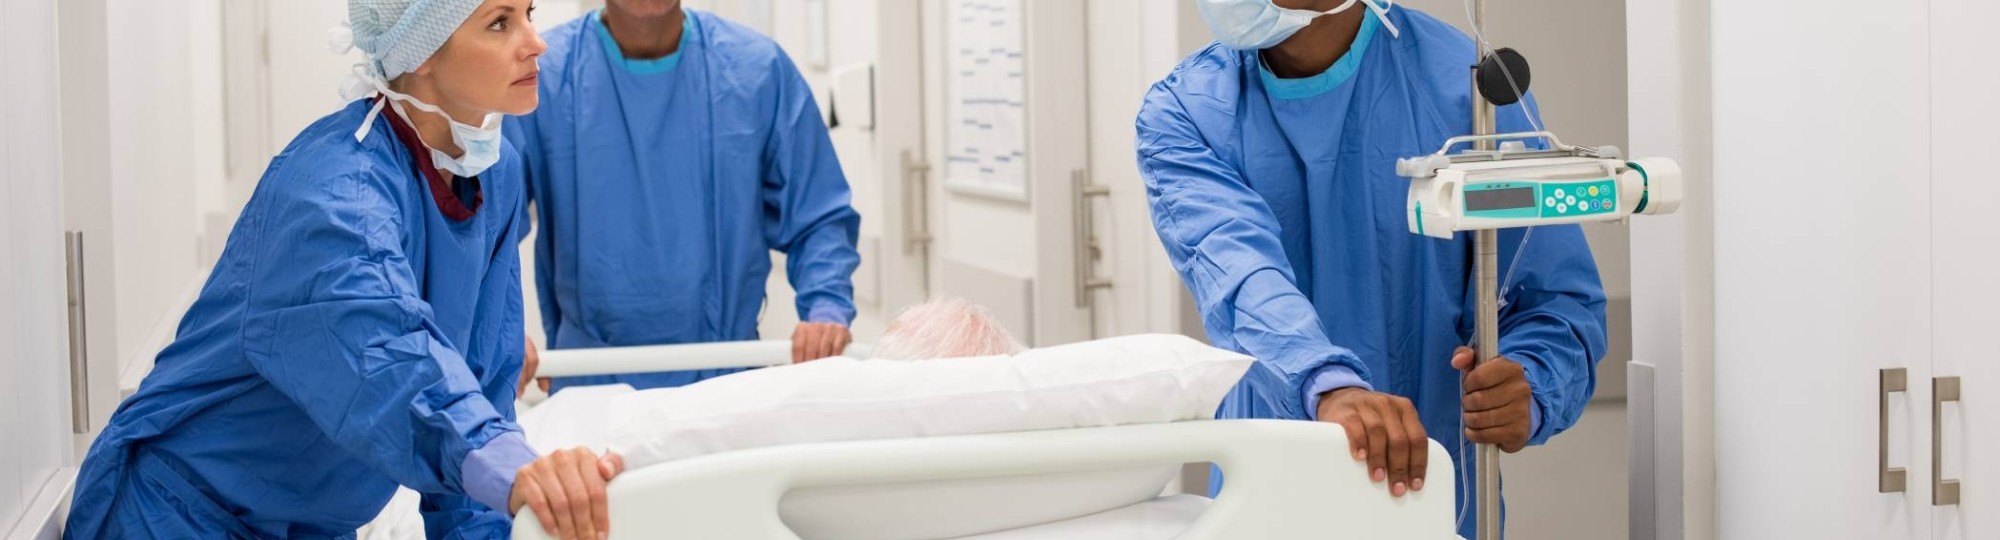 347057 Ziekenhuispersoneel in ziekenhuis duwen een bed met patient